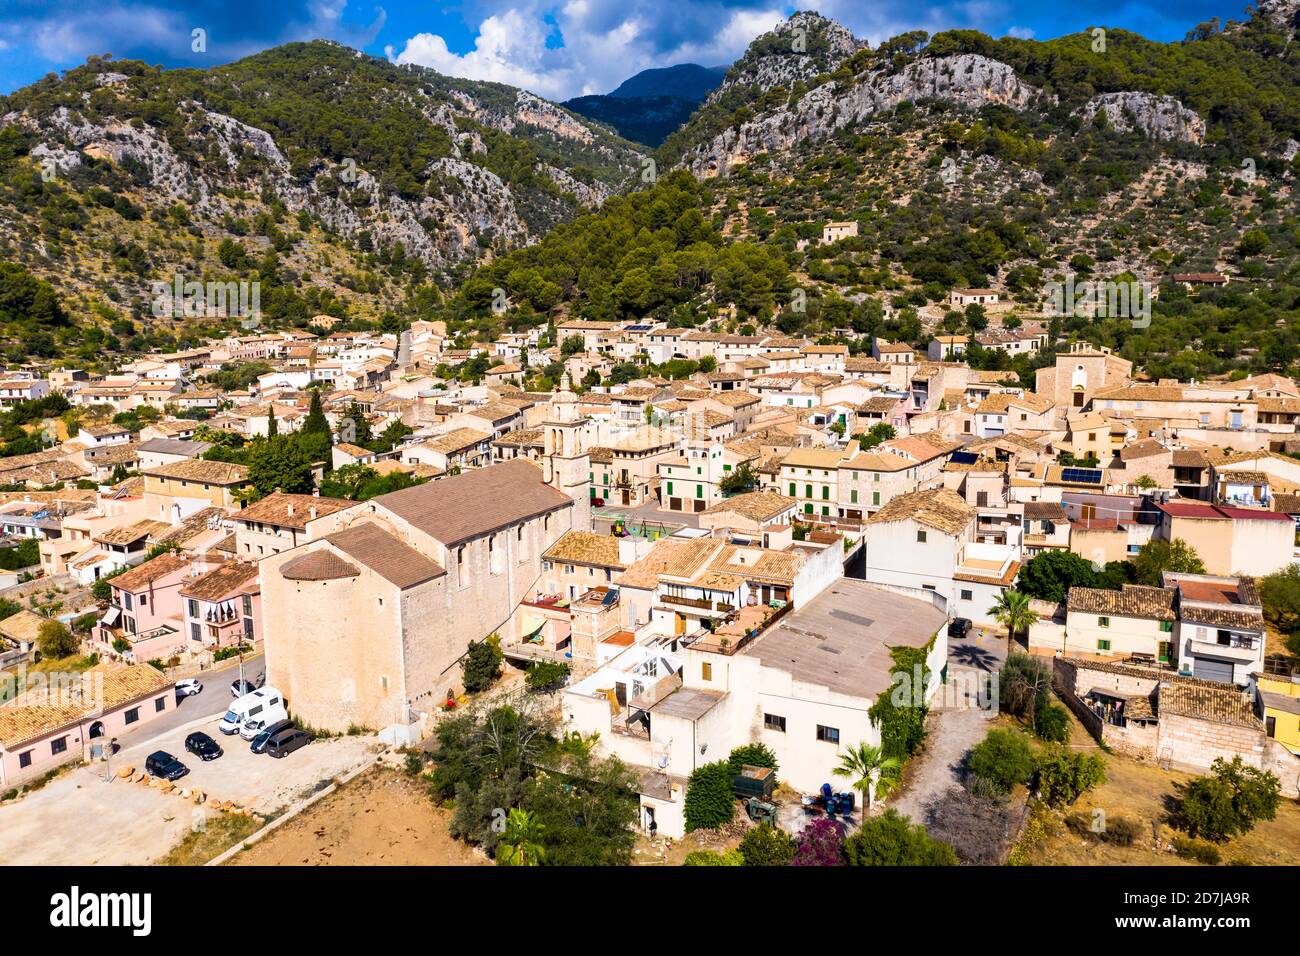 Vista aerea di case in villaggio contro la catena montuosa nella giornata di sole, Caimari, Maiorca, Spagna Foto Stock